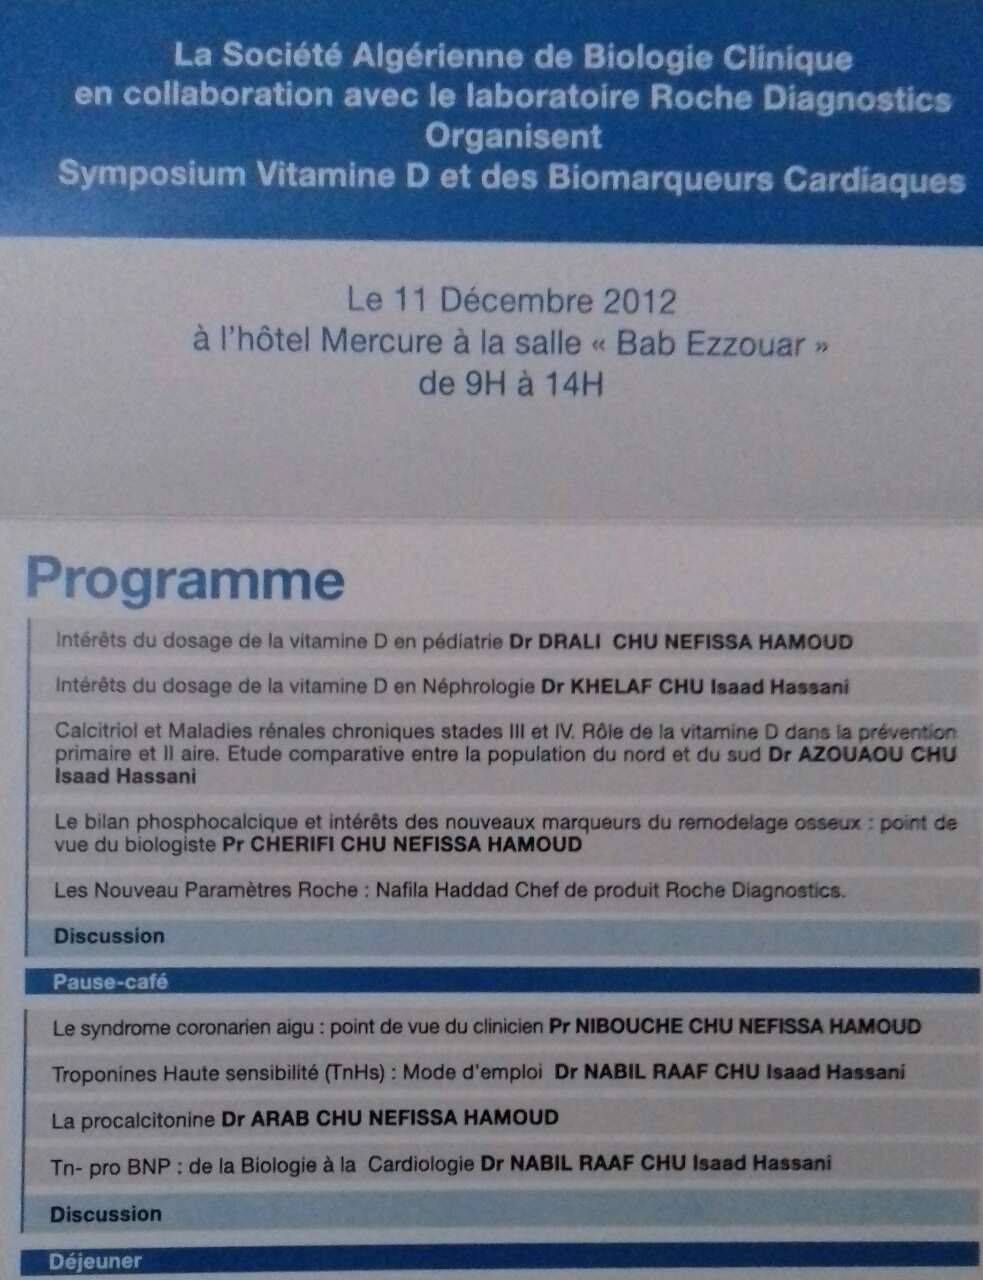 Symposium Vitamine D & Biomarqueurs